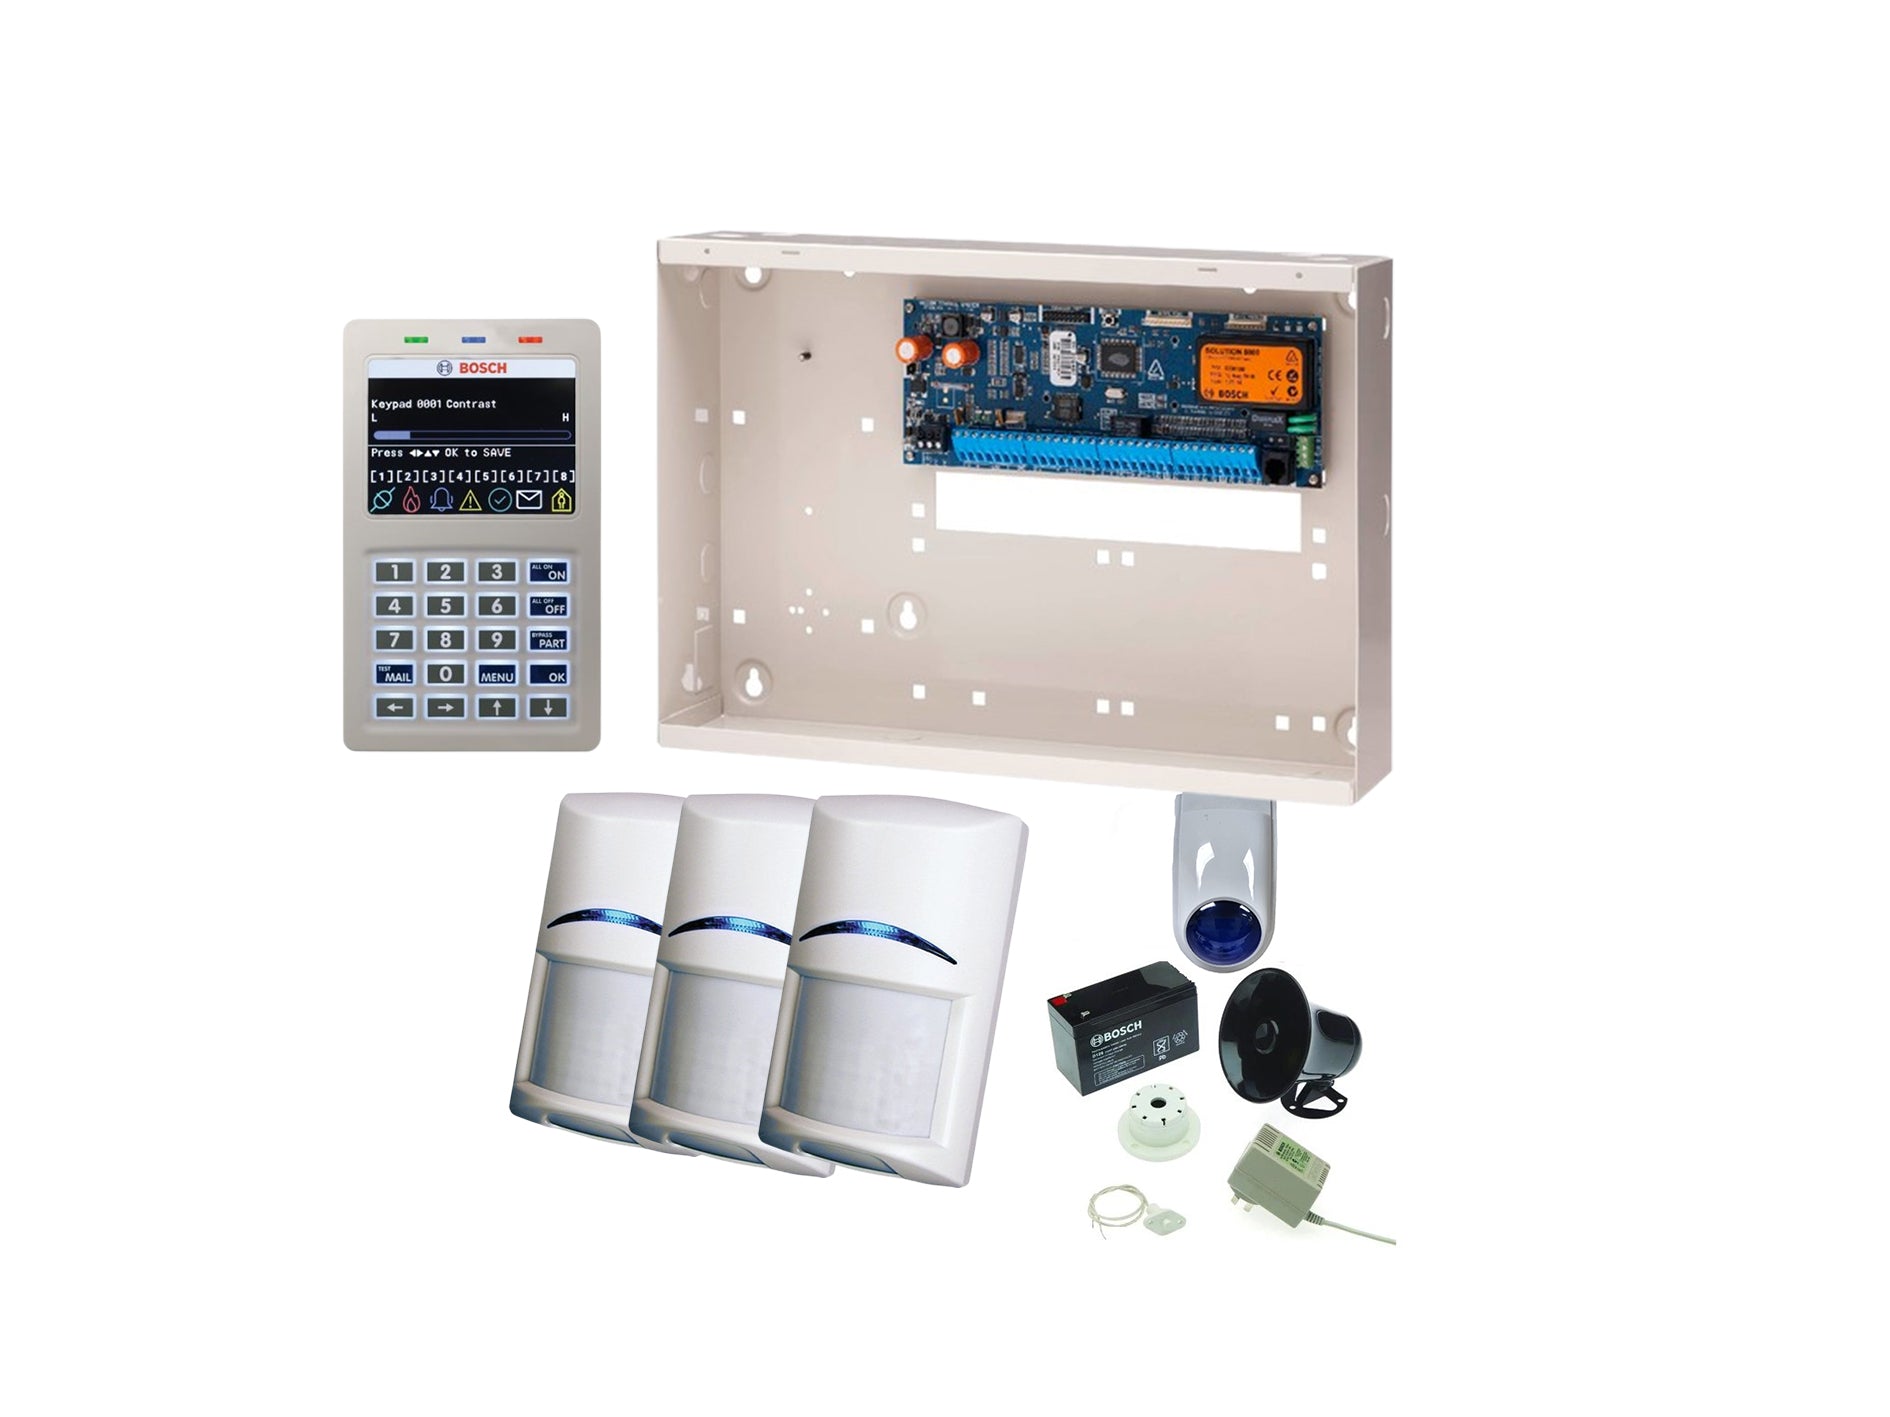 BOSCH, Solution 6000, Alarm kit,+ CC610PB panel, CP736B Smart Prox LCD keypad, 3x Quad PIR detectors + Accessories included